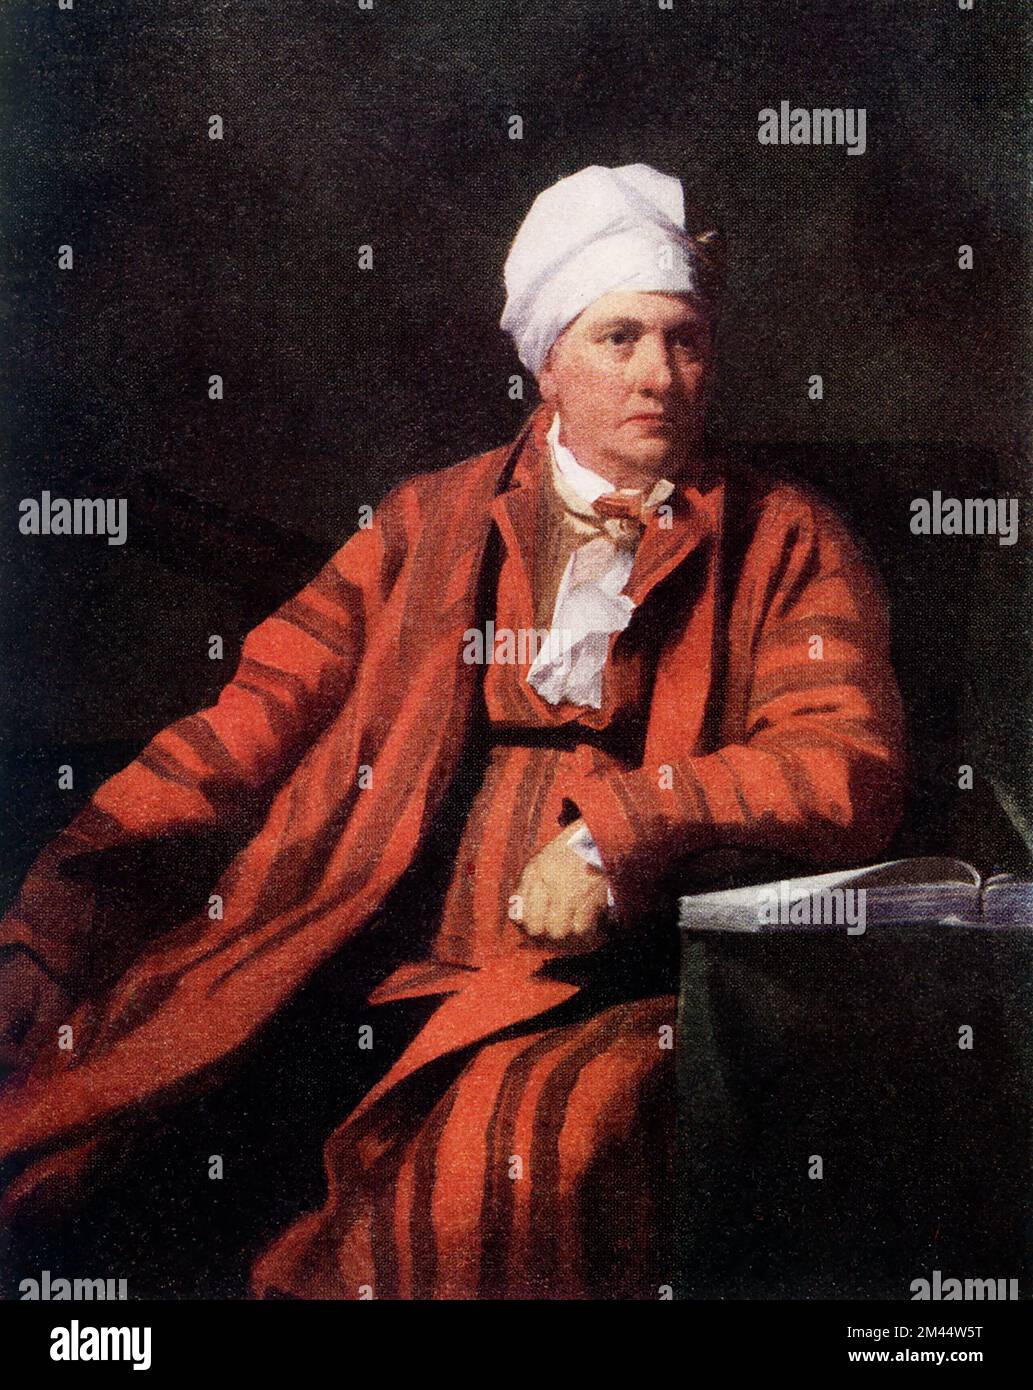 La légende de cette image, écrite vers 1910, se lit comme suit : « Professeur Robinson par Raeburn (1756-1823) à l'Université d'Édimbourg. Peint vers 1798, le «Professeur Robinson» est sur les portraits les plus remarquables peints par Raeburn avant 1800. Il représente l'aboutissement de sa manière de premier coup d'État. Sir Henry Raeburn (1756 – 1823) était un peintre écossais. Il a servi comme peintre de portrait au roi George IV en Écosse. Banque D'Images